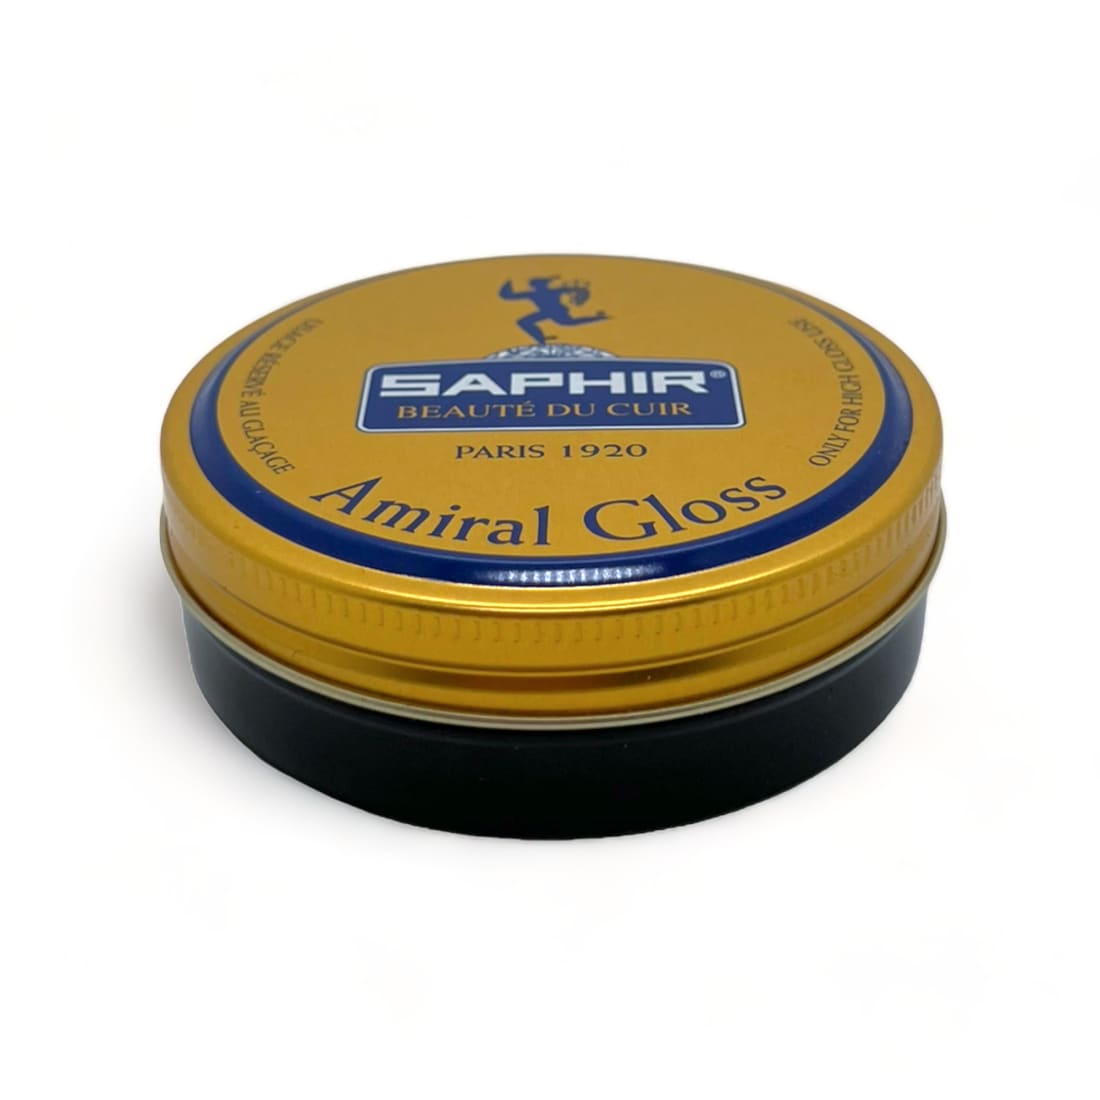 Cirage Amiral Gloss noir pour le glaçage - Saphir - 50 ml -